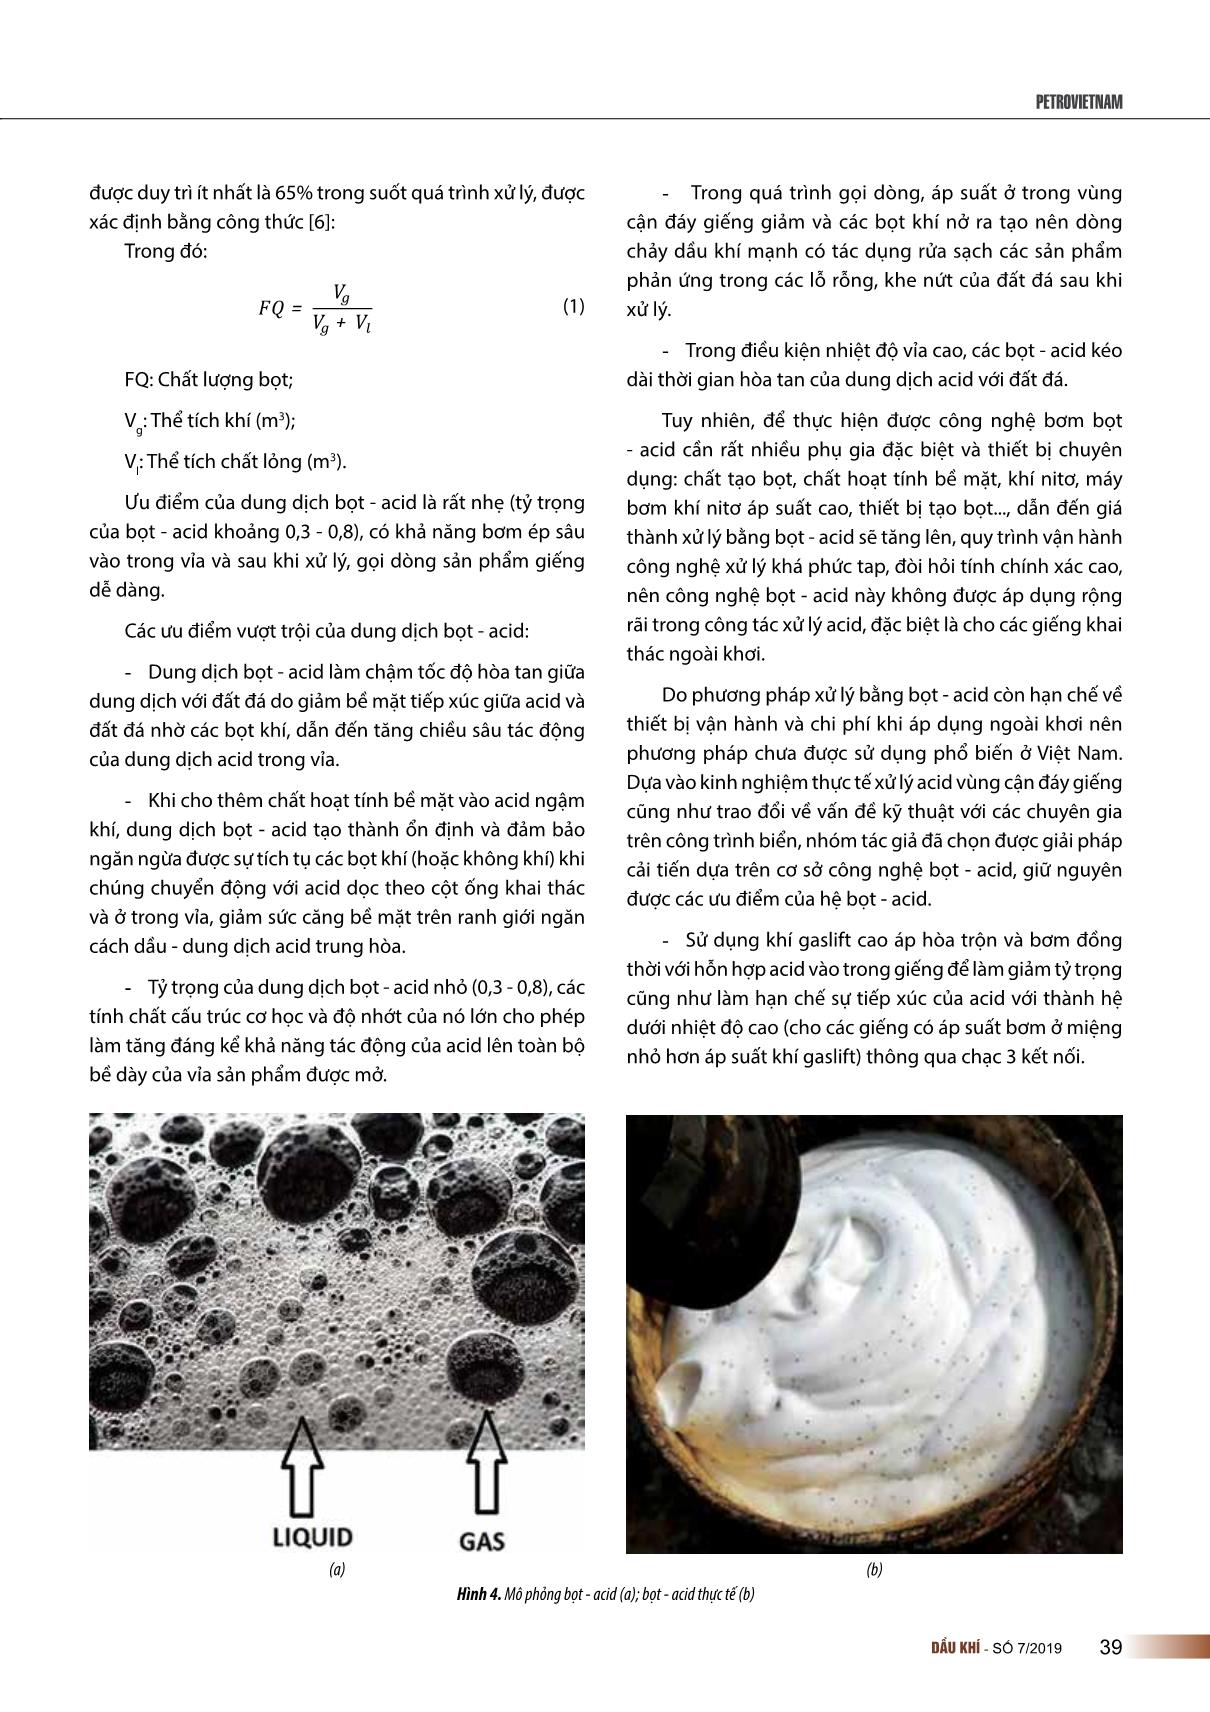 Nghiên cứu sử dụng khí gaslift cao áp tạo hệ bọt - acid xử lý vùng cận đáy giếng tại mỏ Bạch Hổ trang 3